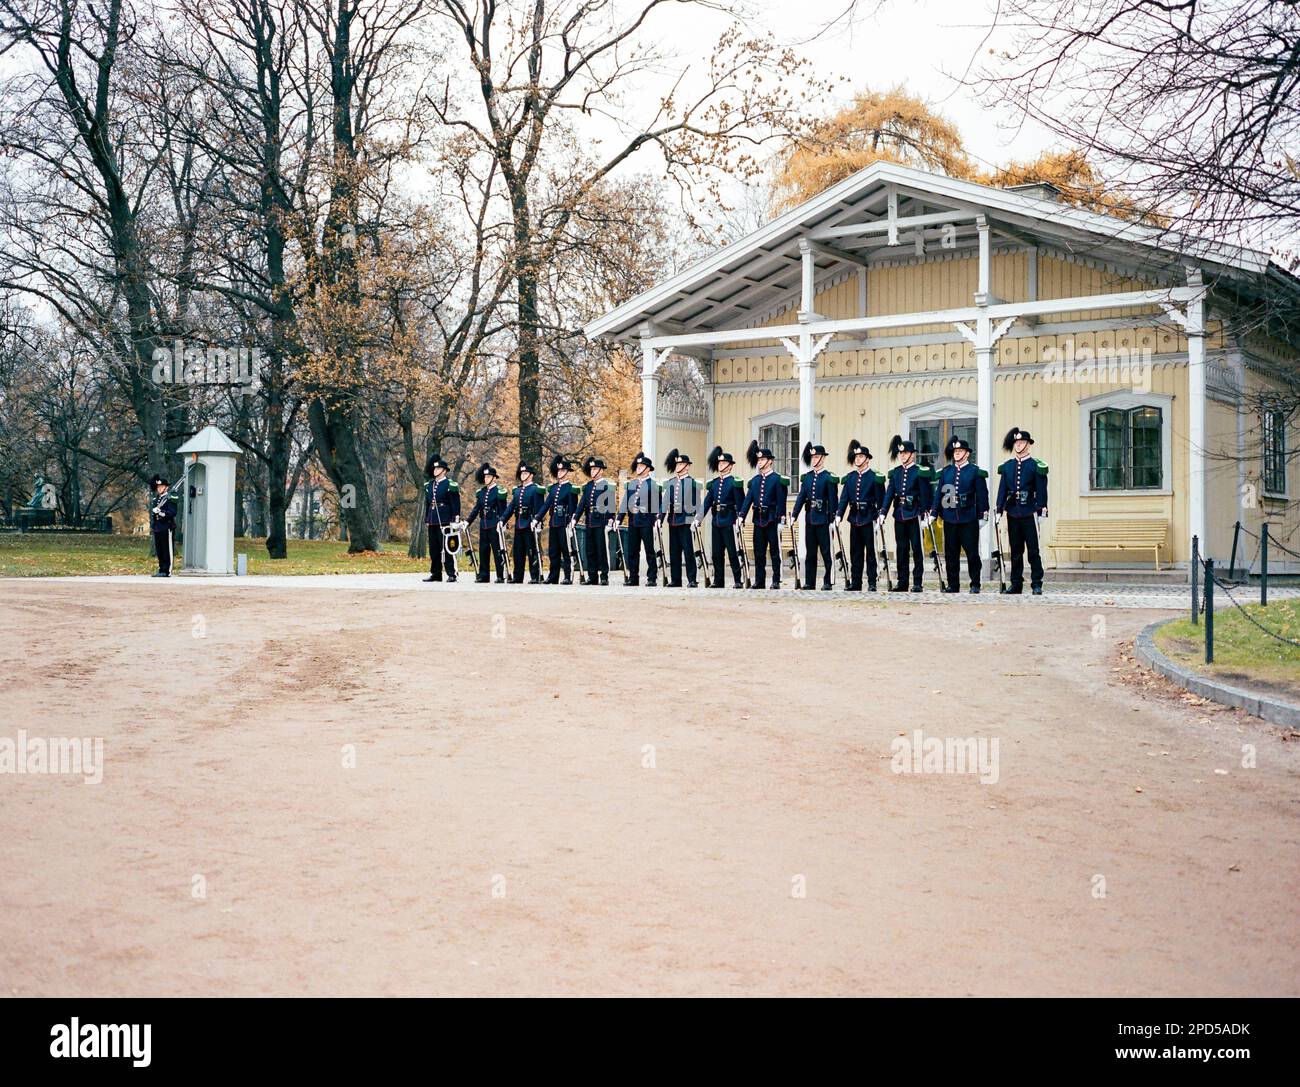 Royal Guards, The Royal Palace, Oslo, Norway. Stock Photo